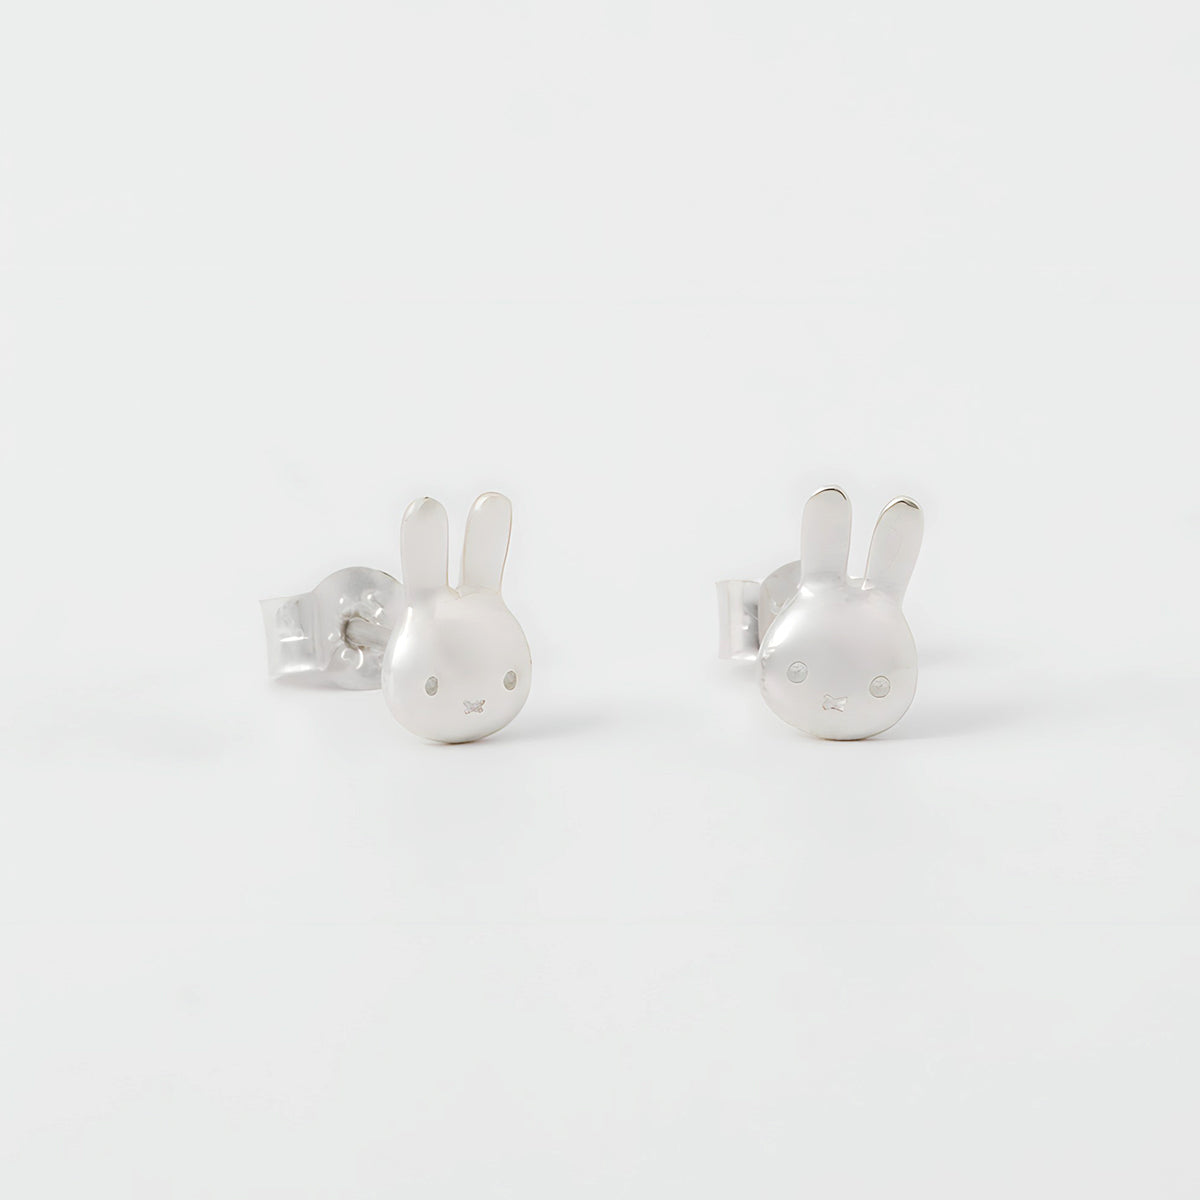 Miffy Rabbit Head Stud Earrings Sterling Silver 